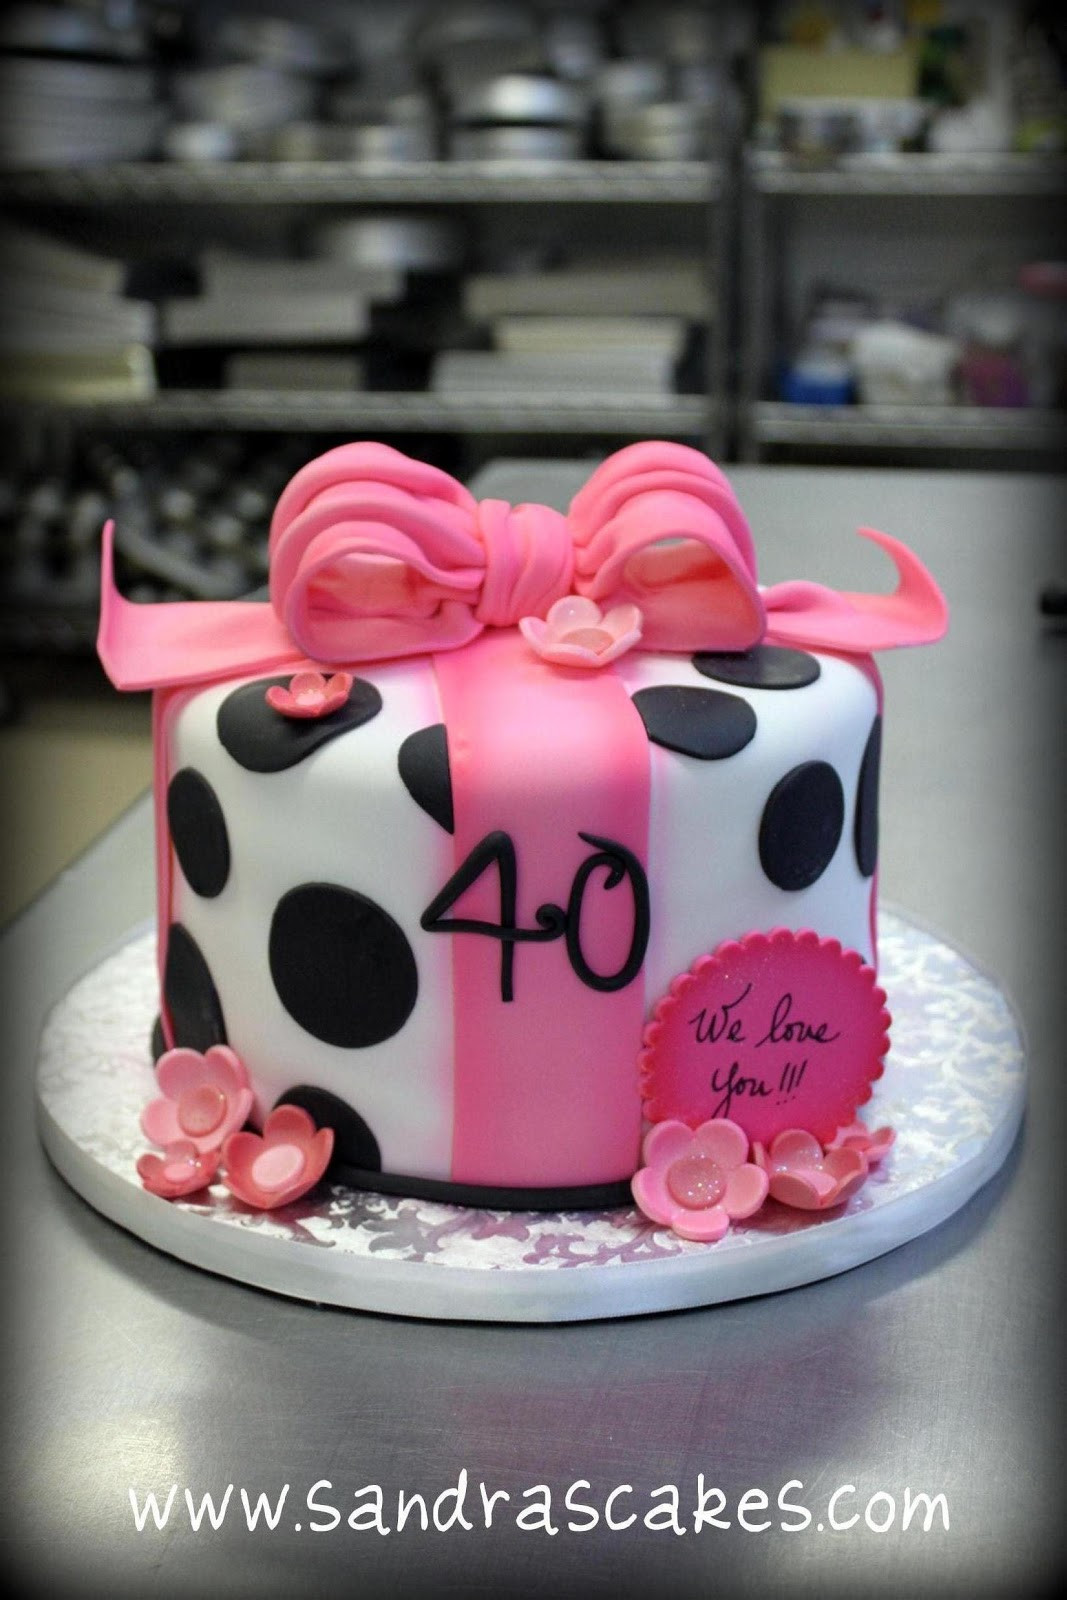 Cool Birthday Cakes
 UNIQUE BIRTHDAY CAKES